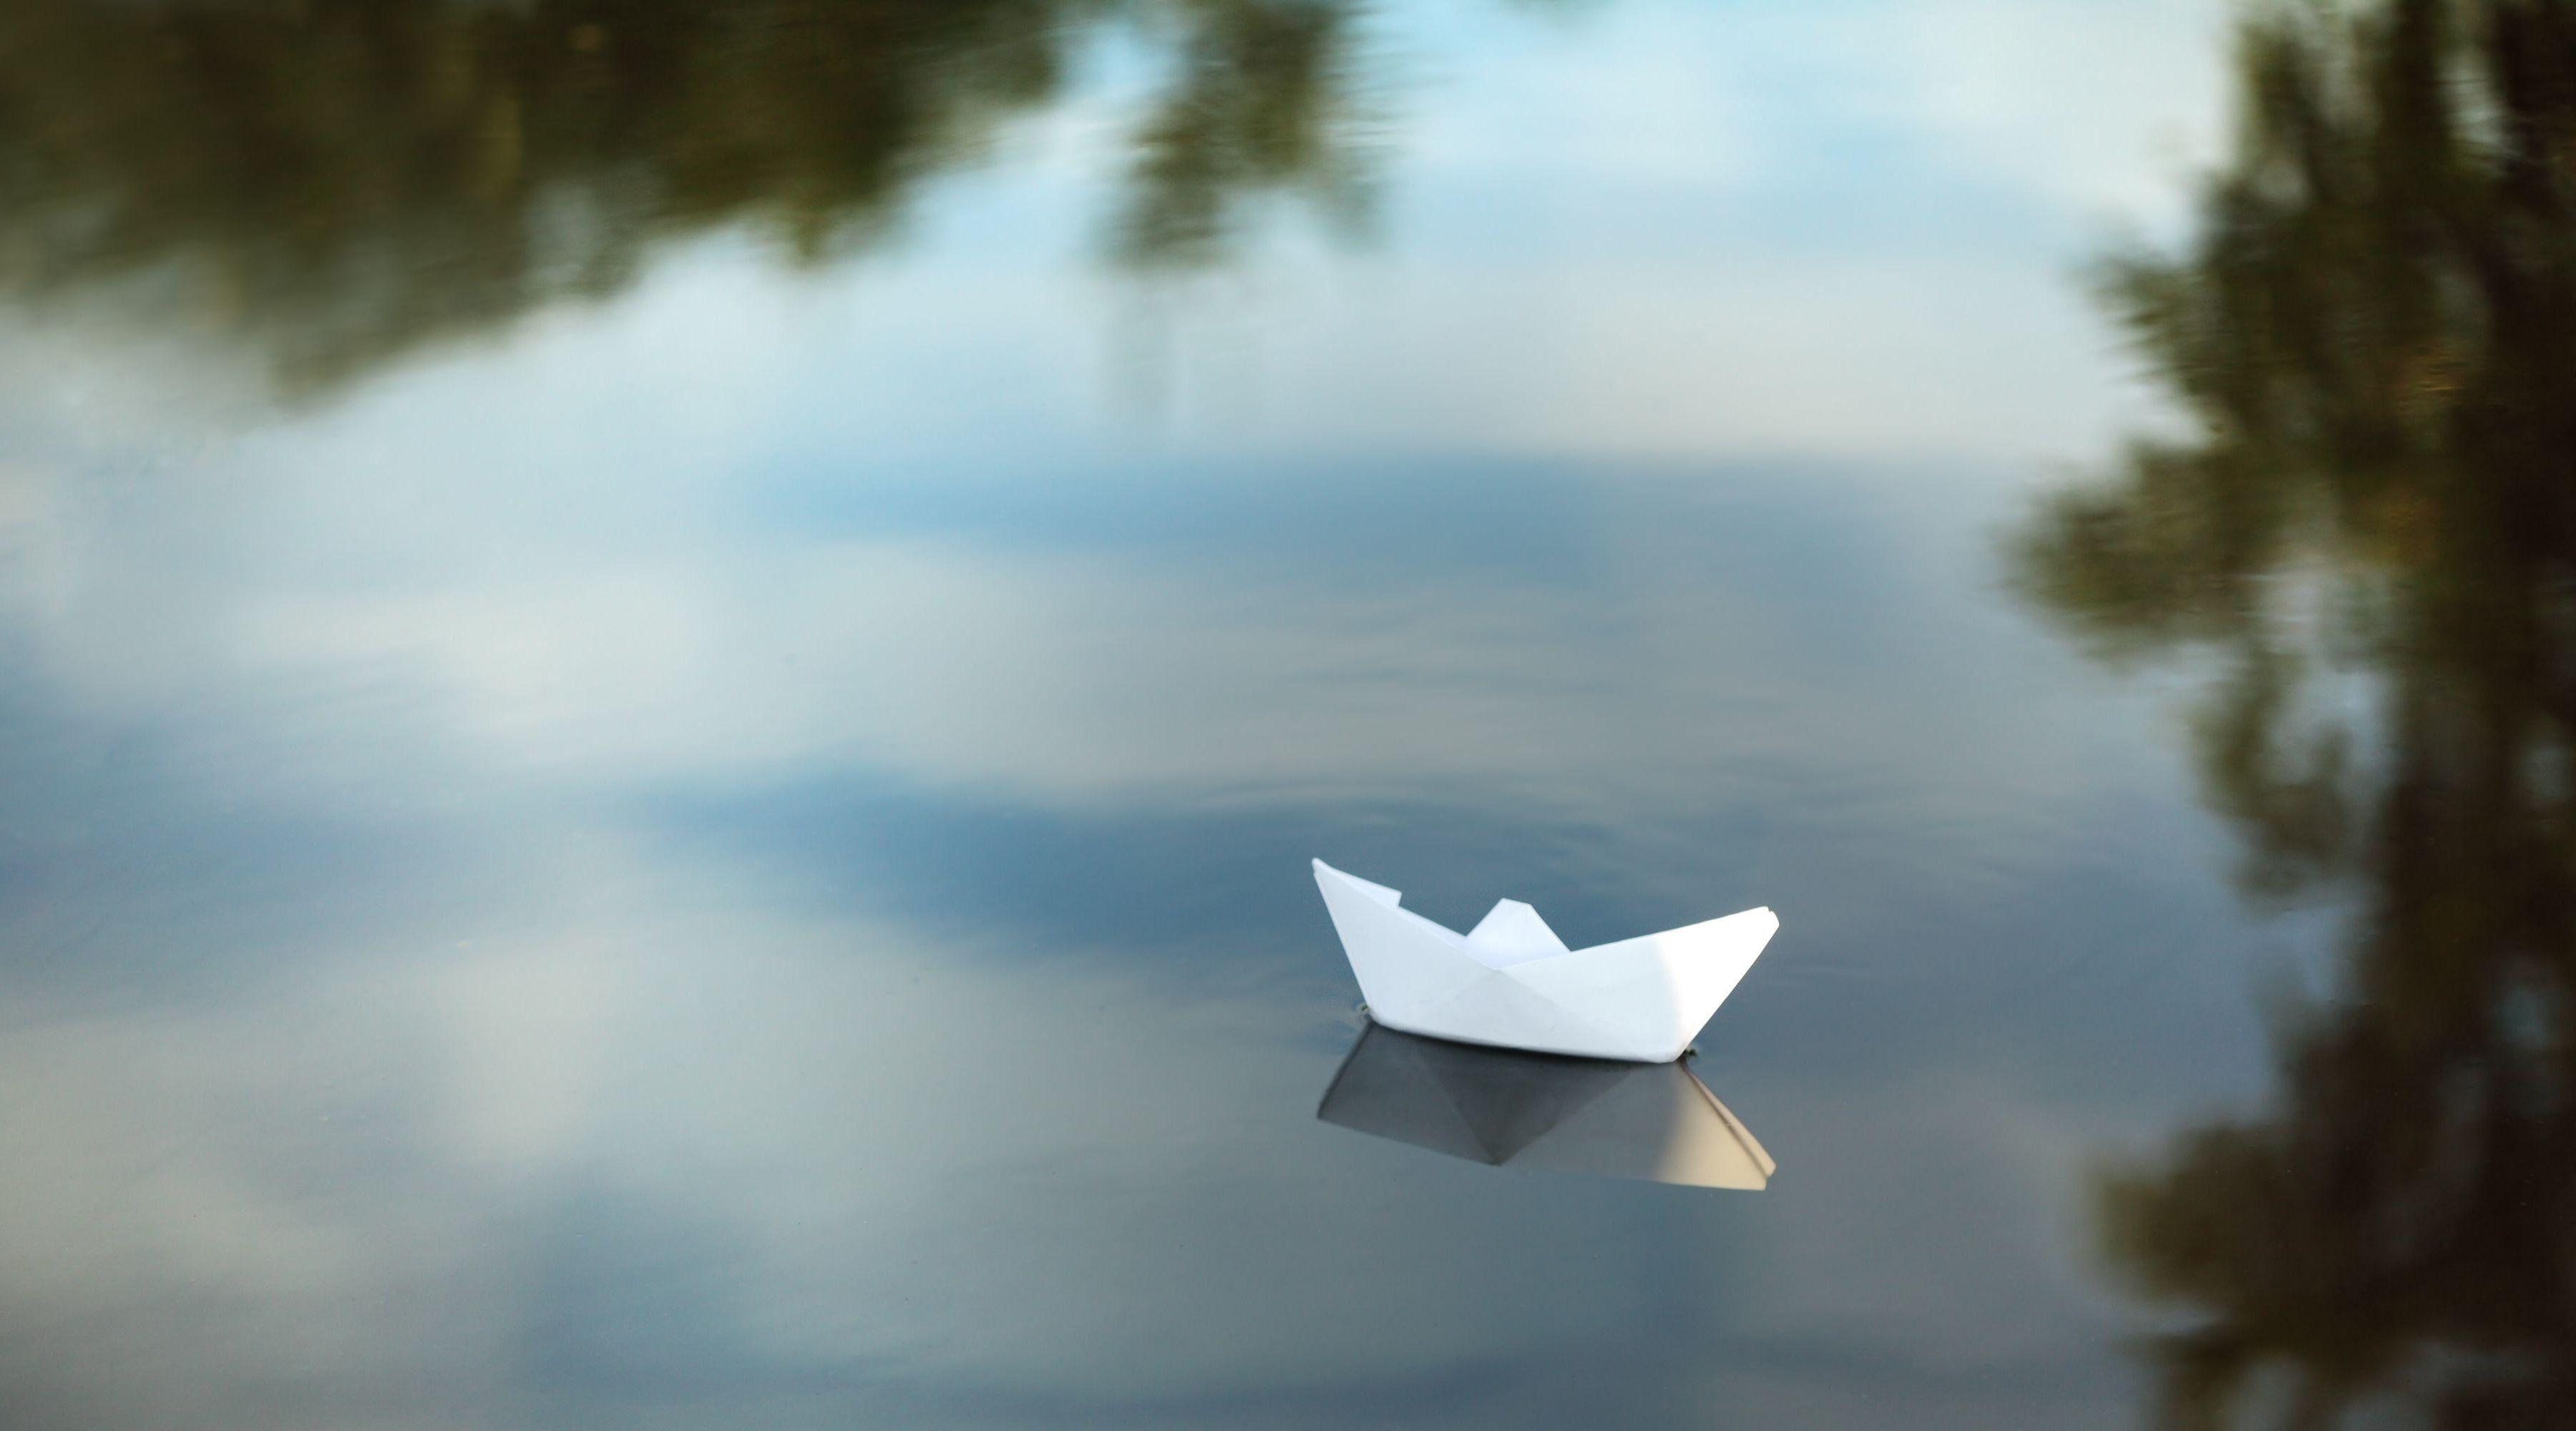 Кораблик из бумаги я по ручью пустил. Бумажный кораблик. Бумажный кораблик в реке. Бумажный кораблик в море. Бумажный кораблик на воде.